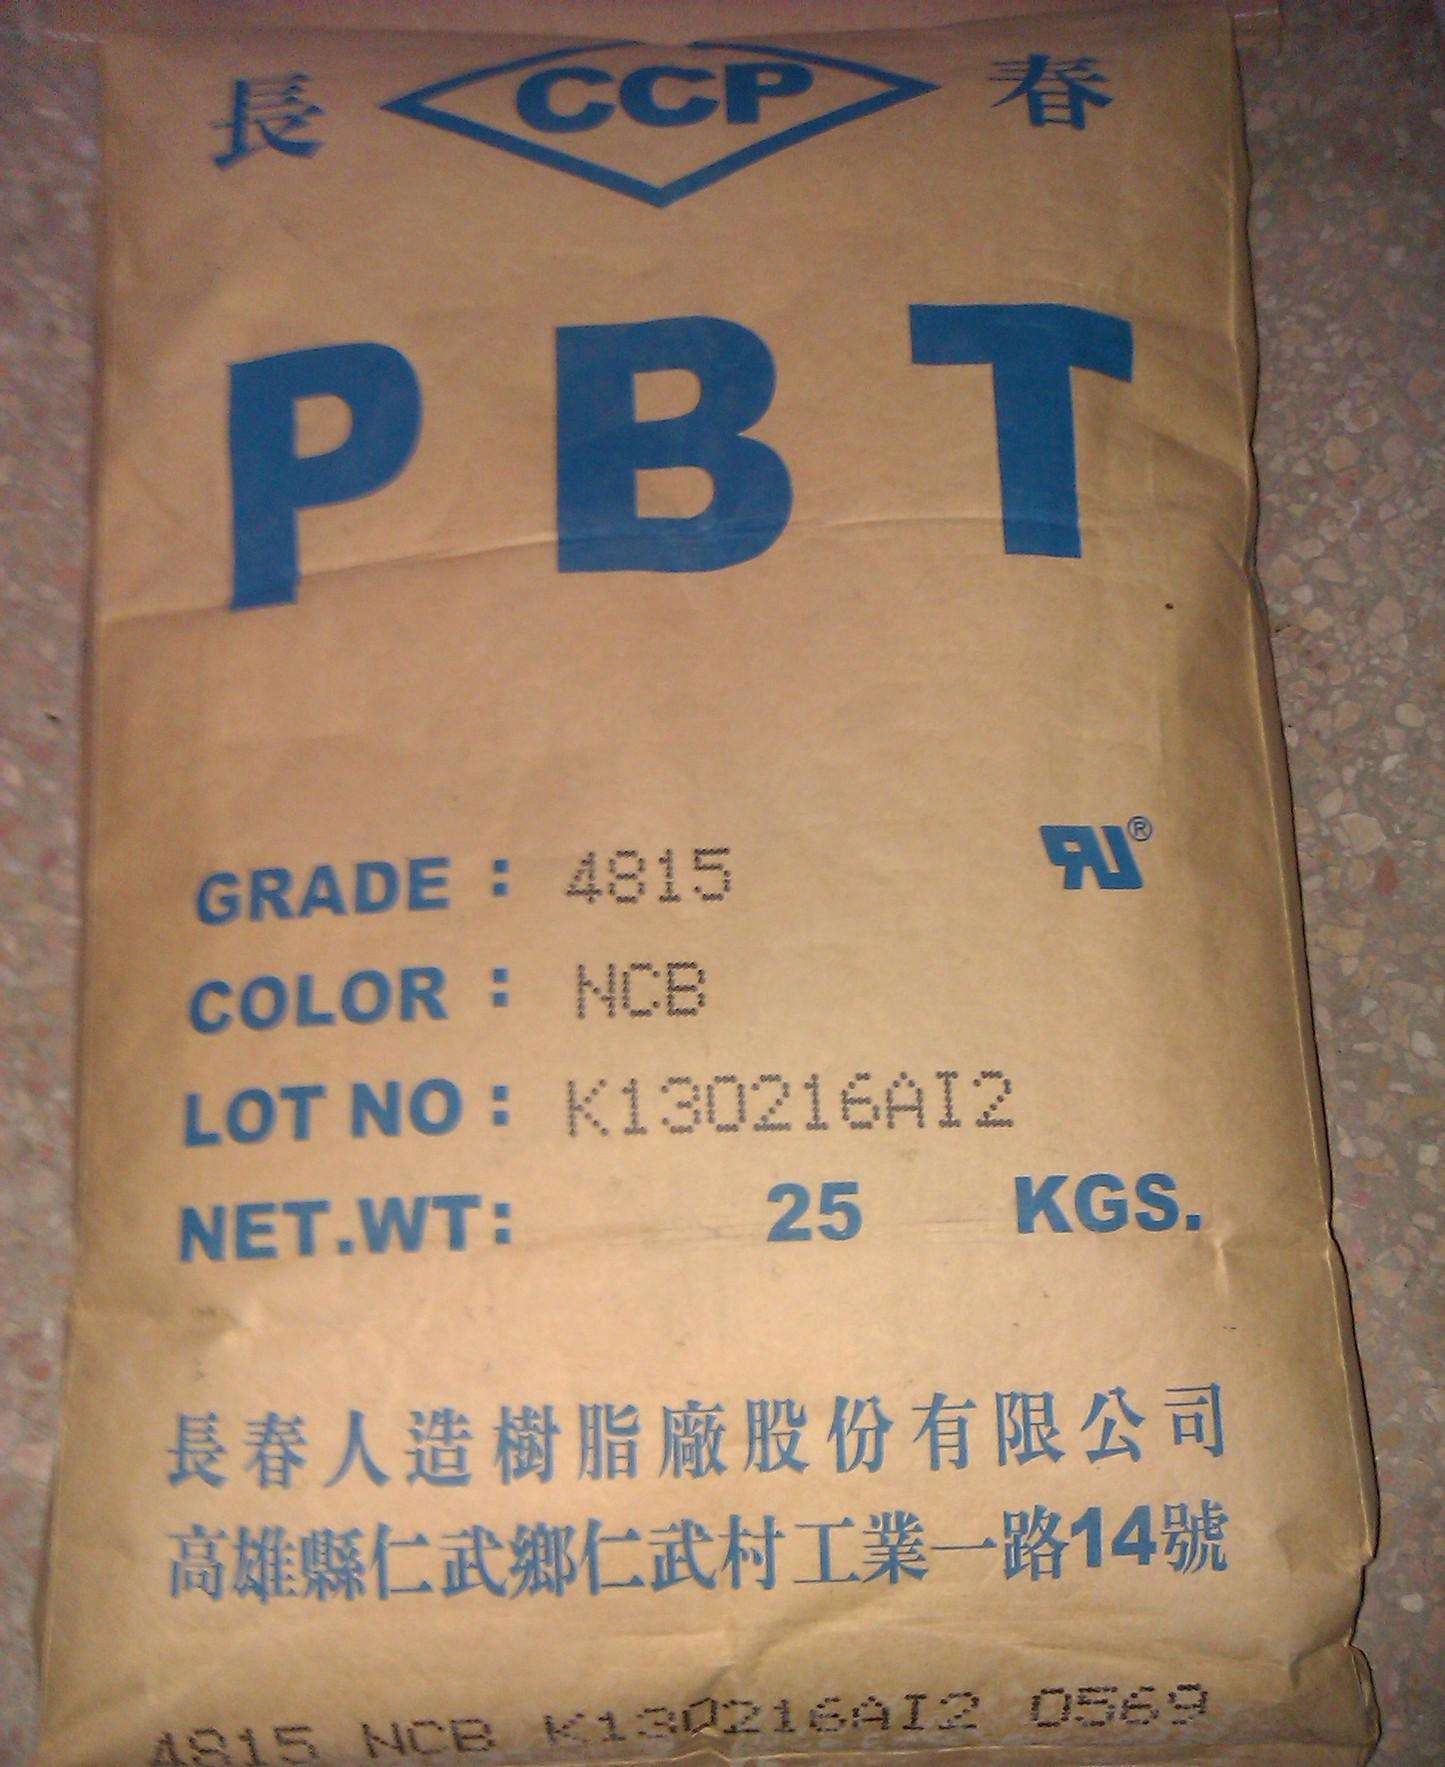 PBT 中国台湾长春 PR950 江浙沪代理